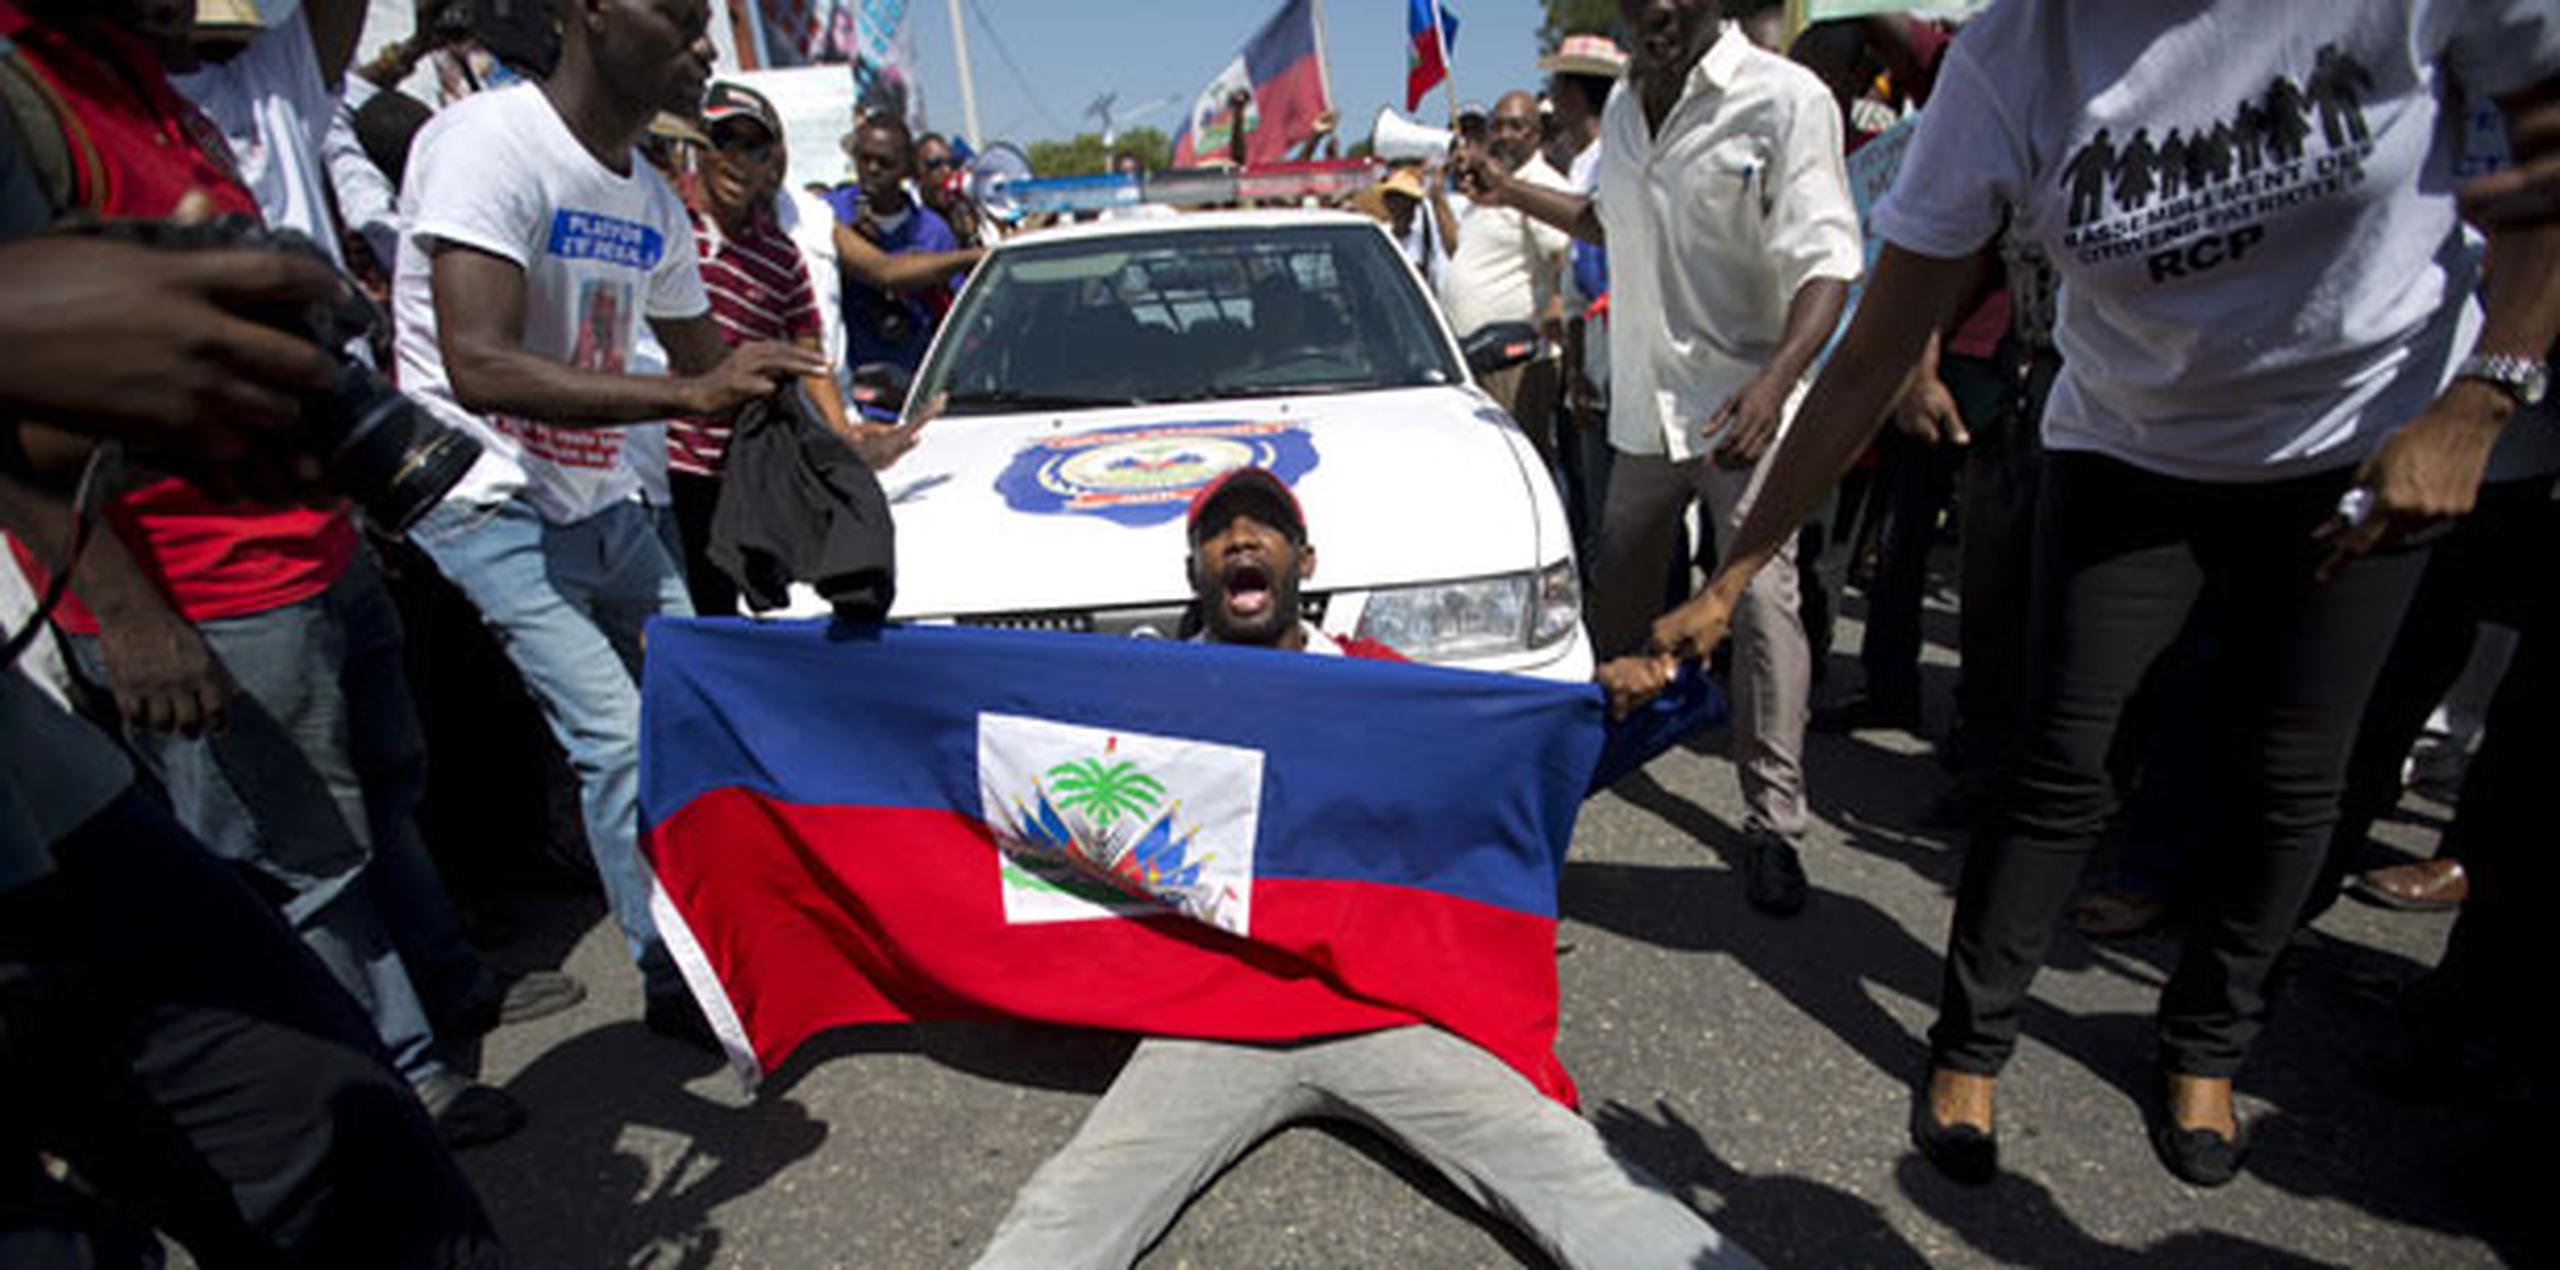 En 2013, una polémica sentencia del Tribunal Constitucional dominicano negó la nacionalidad a los descendientes de indocumentados nacidos en su territorio, la mayoría haitianos. (Archivo)